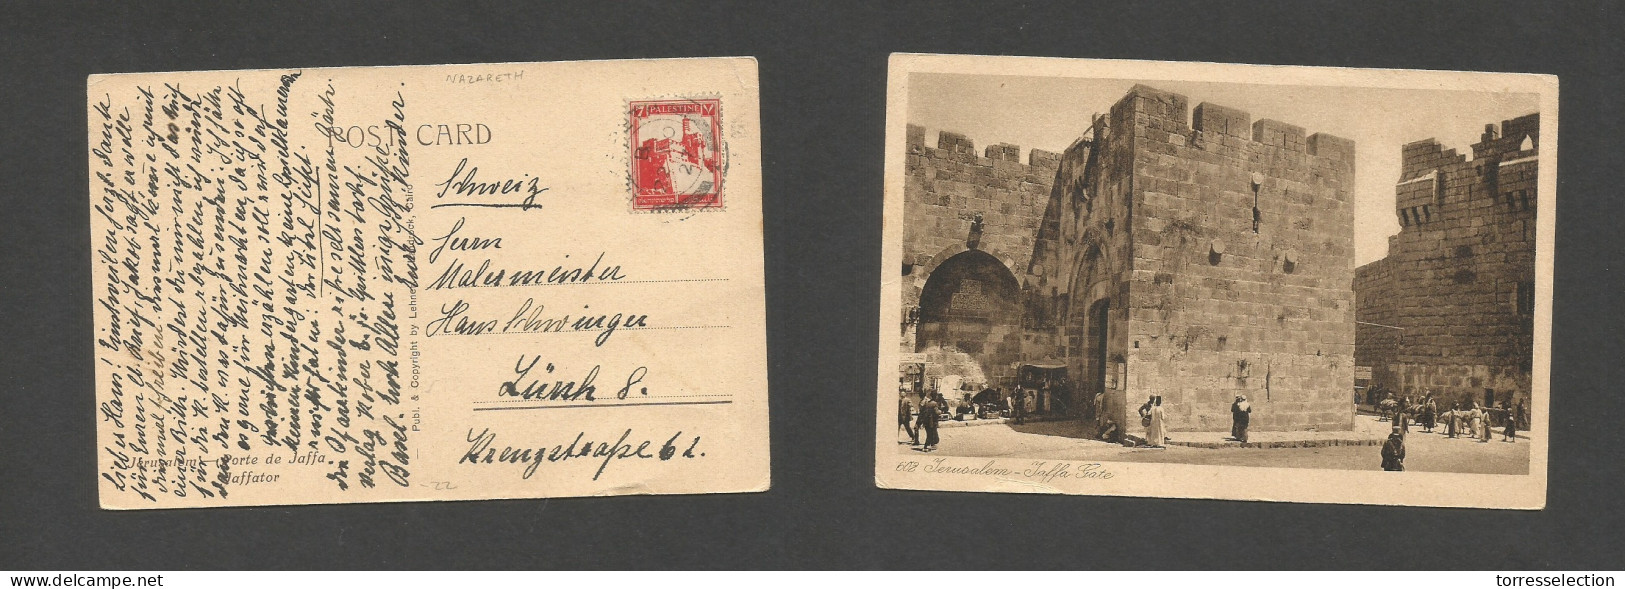 PALESTINE. 1927 (22 Nov) Nazareth - Switzerland, Zurich. Fkd Ppc. Fine. SALE. - Palestina